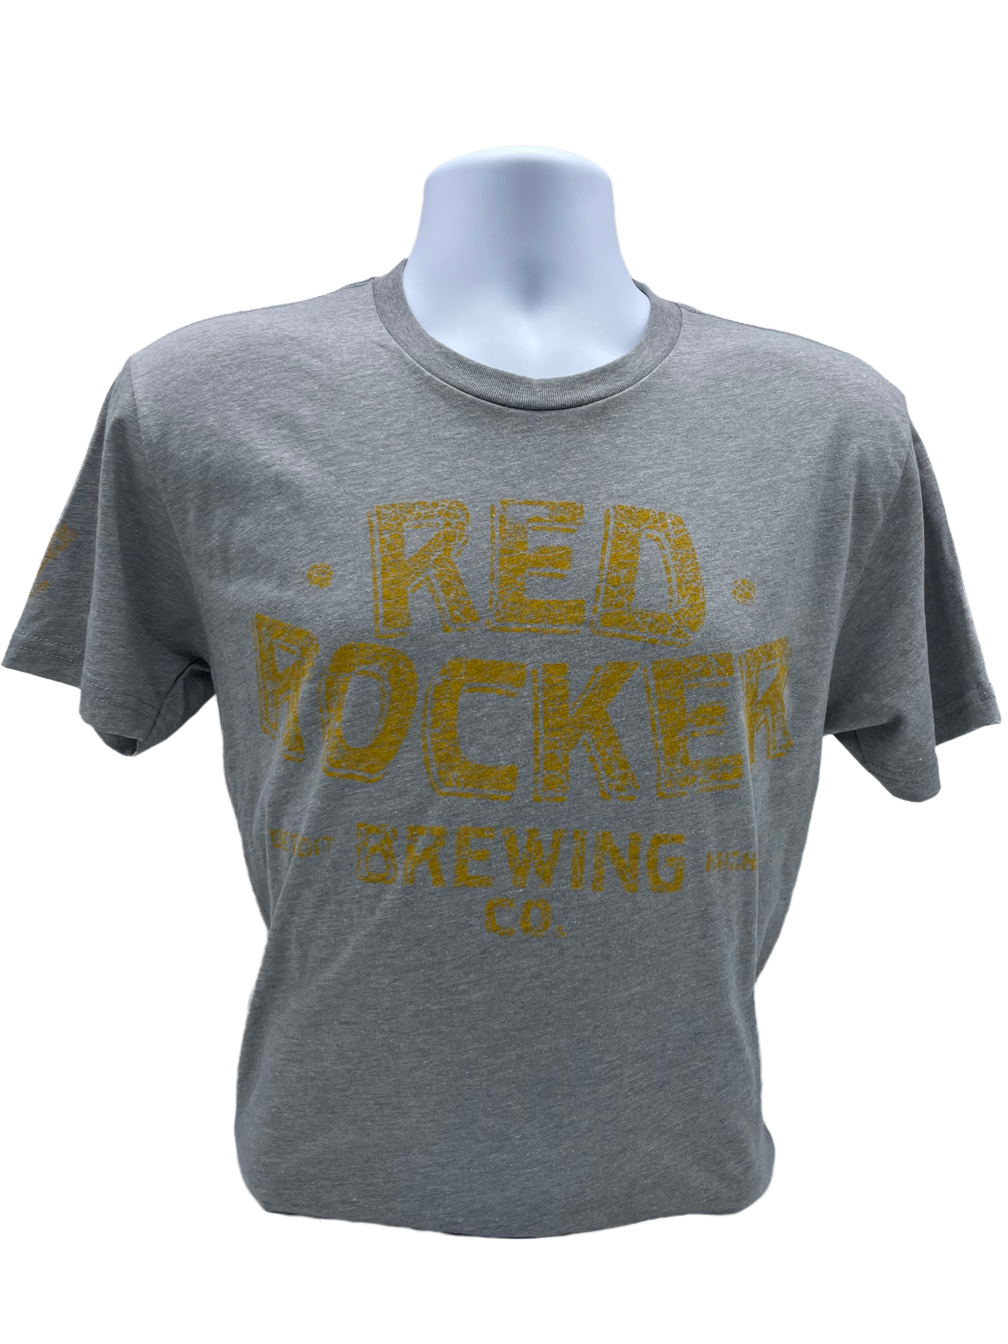 Red Rocker Brewing Co. T-shirt